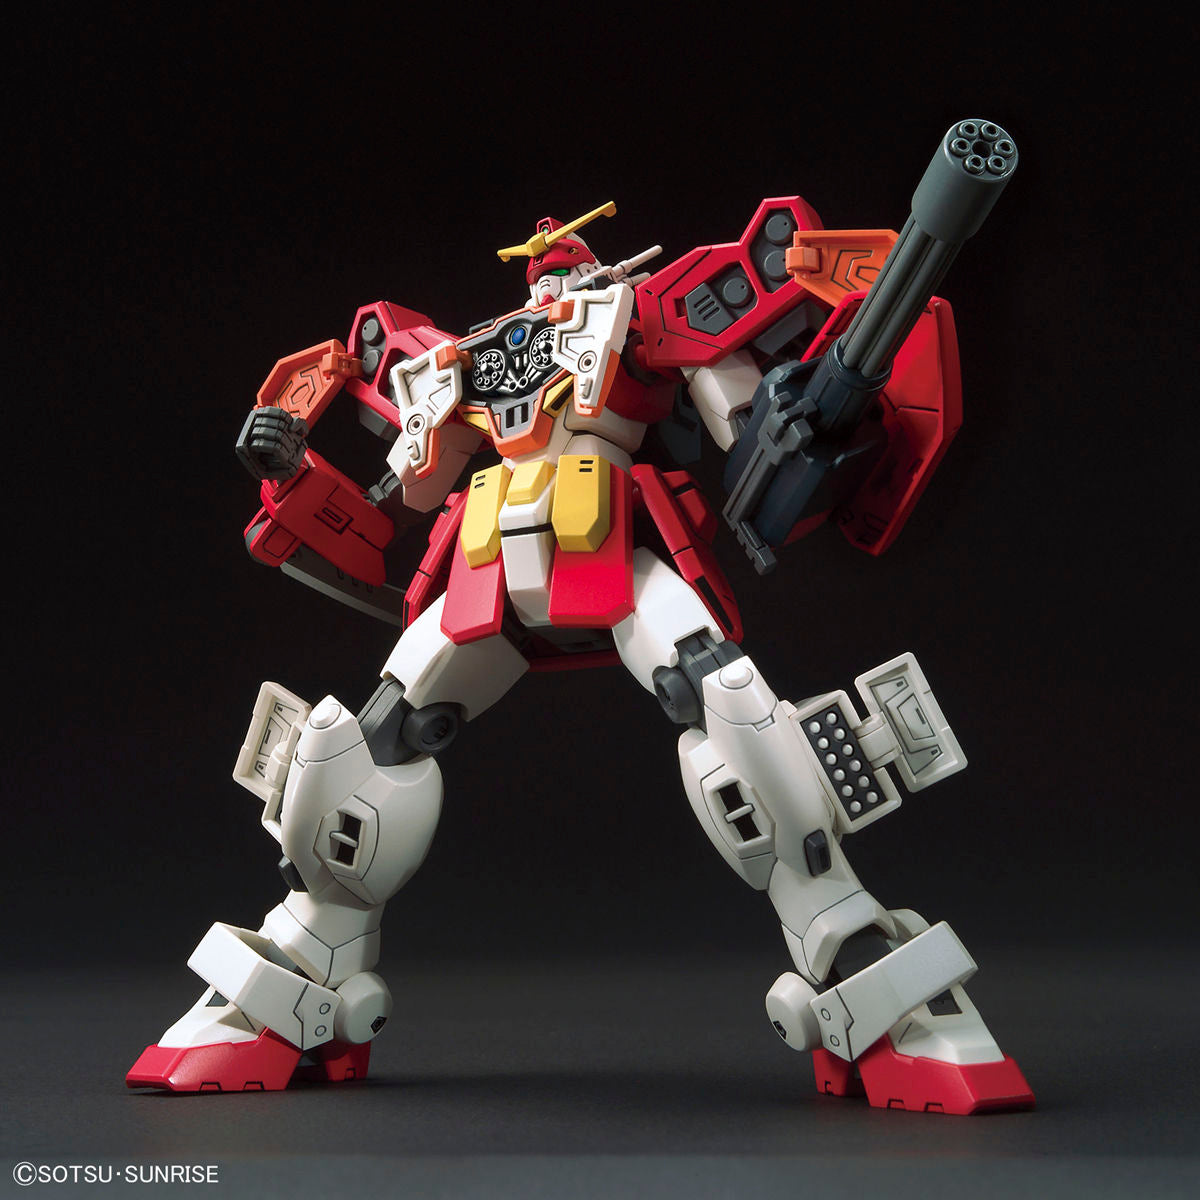 HGAC - XXXG-01H Gundam Heavyarms